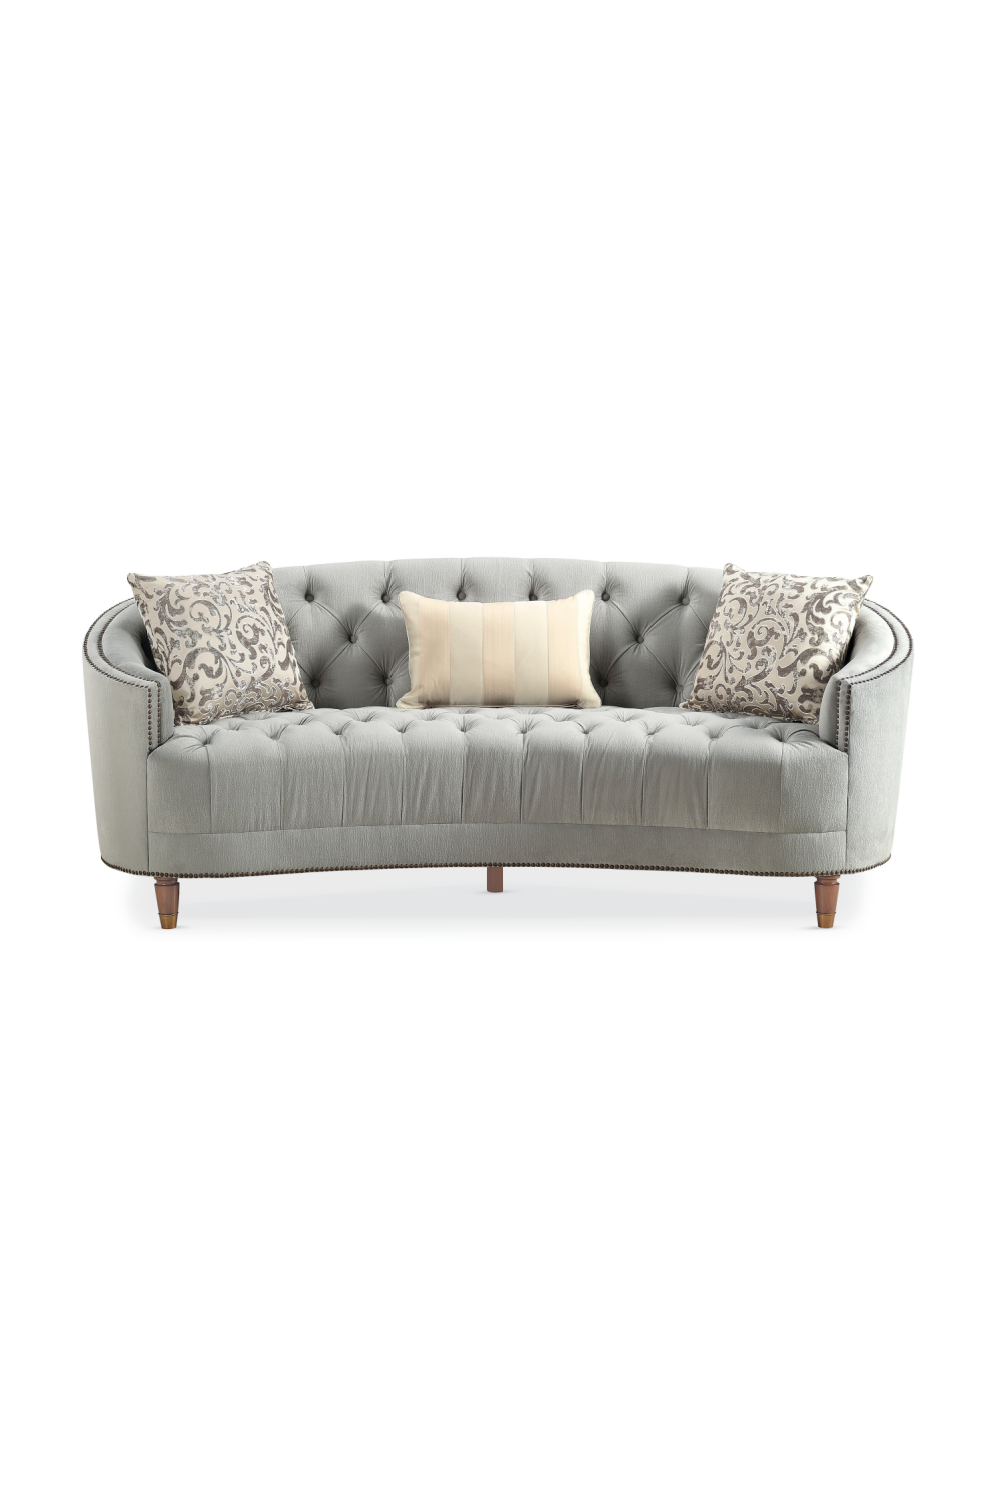 Button-Tufted Sofa | Caracole Classic Elegance | Oroa.com